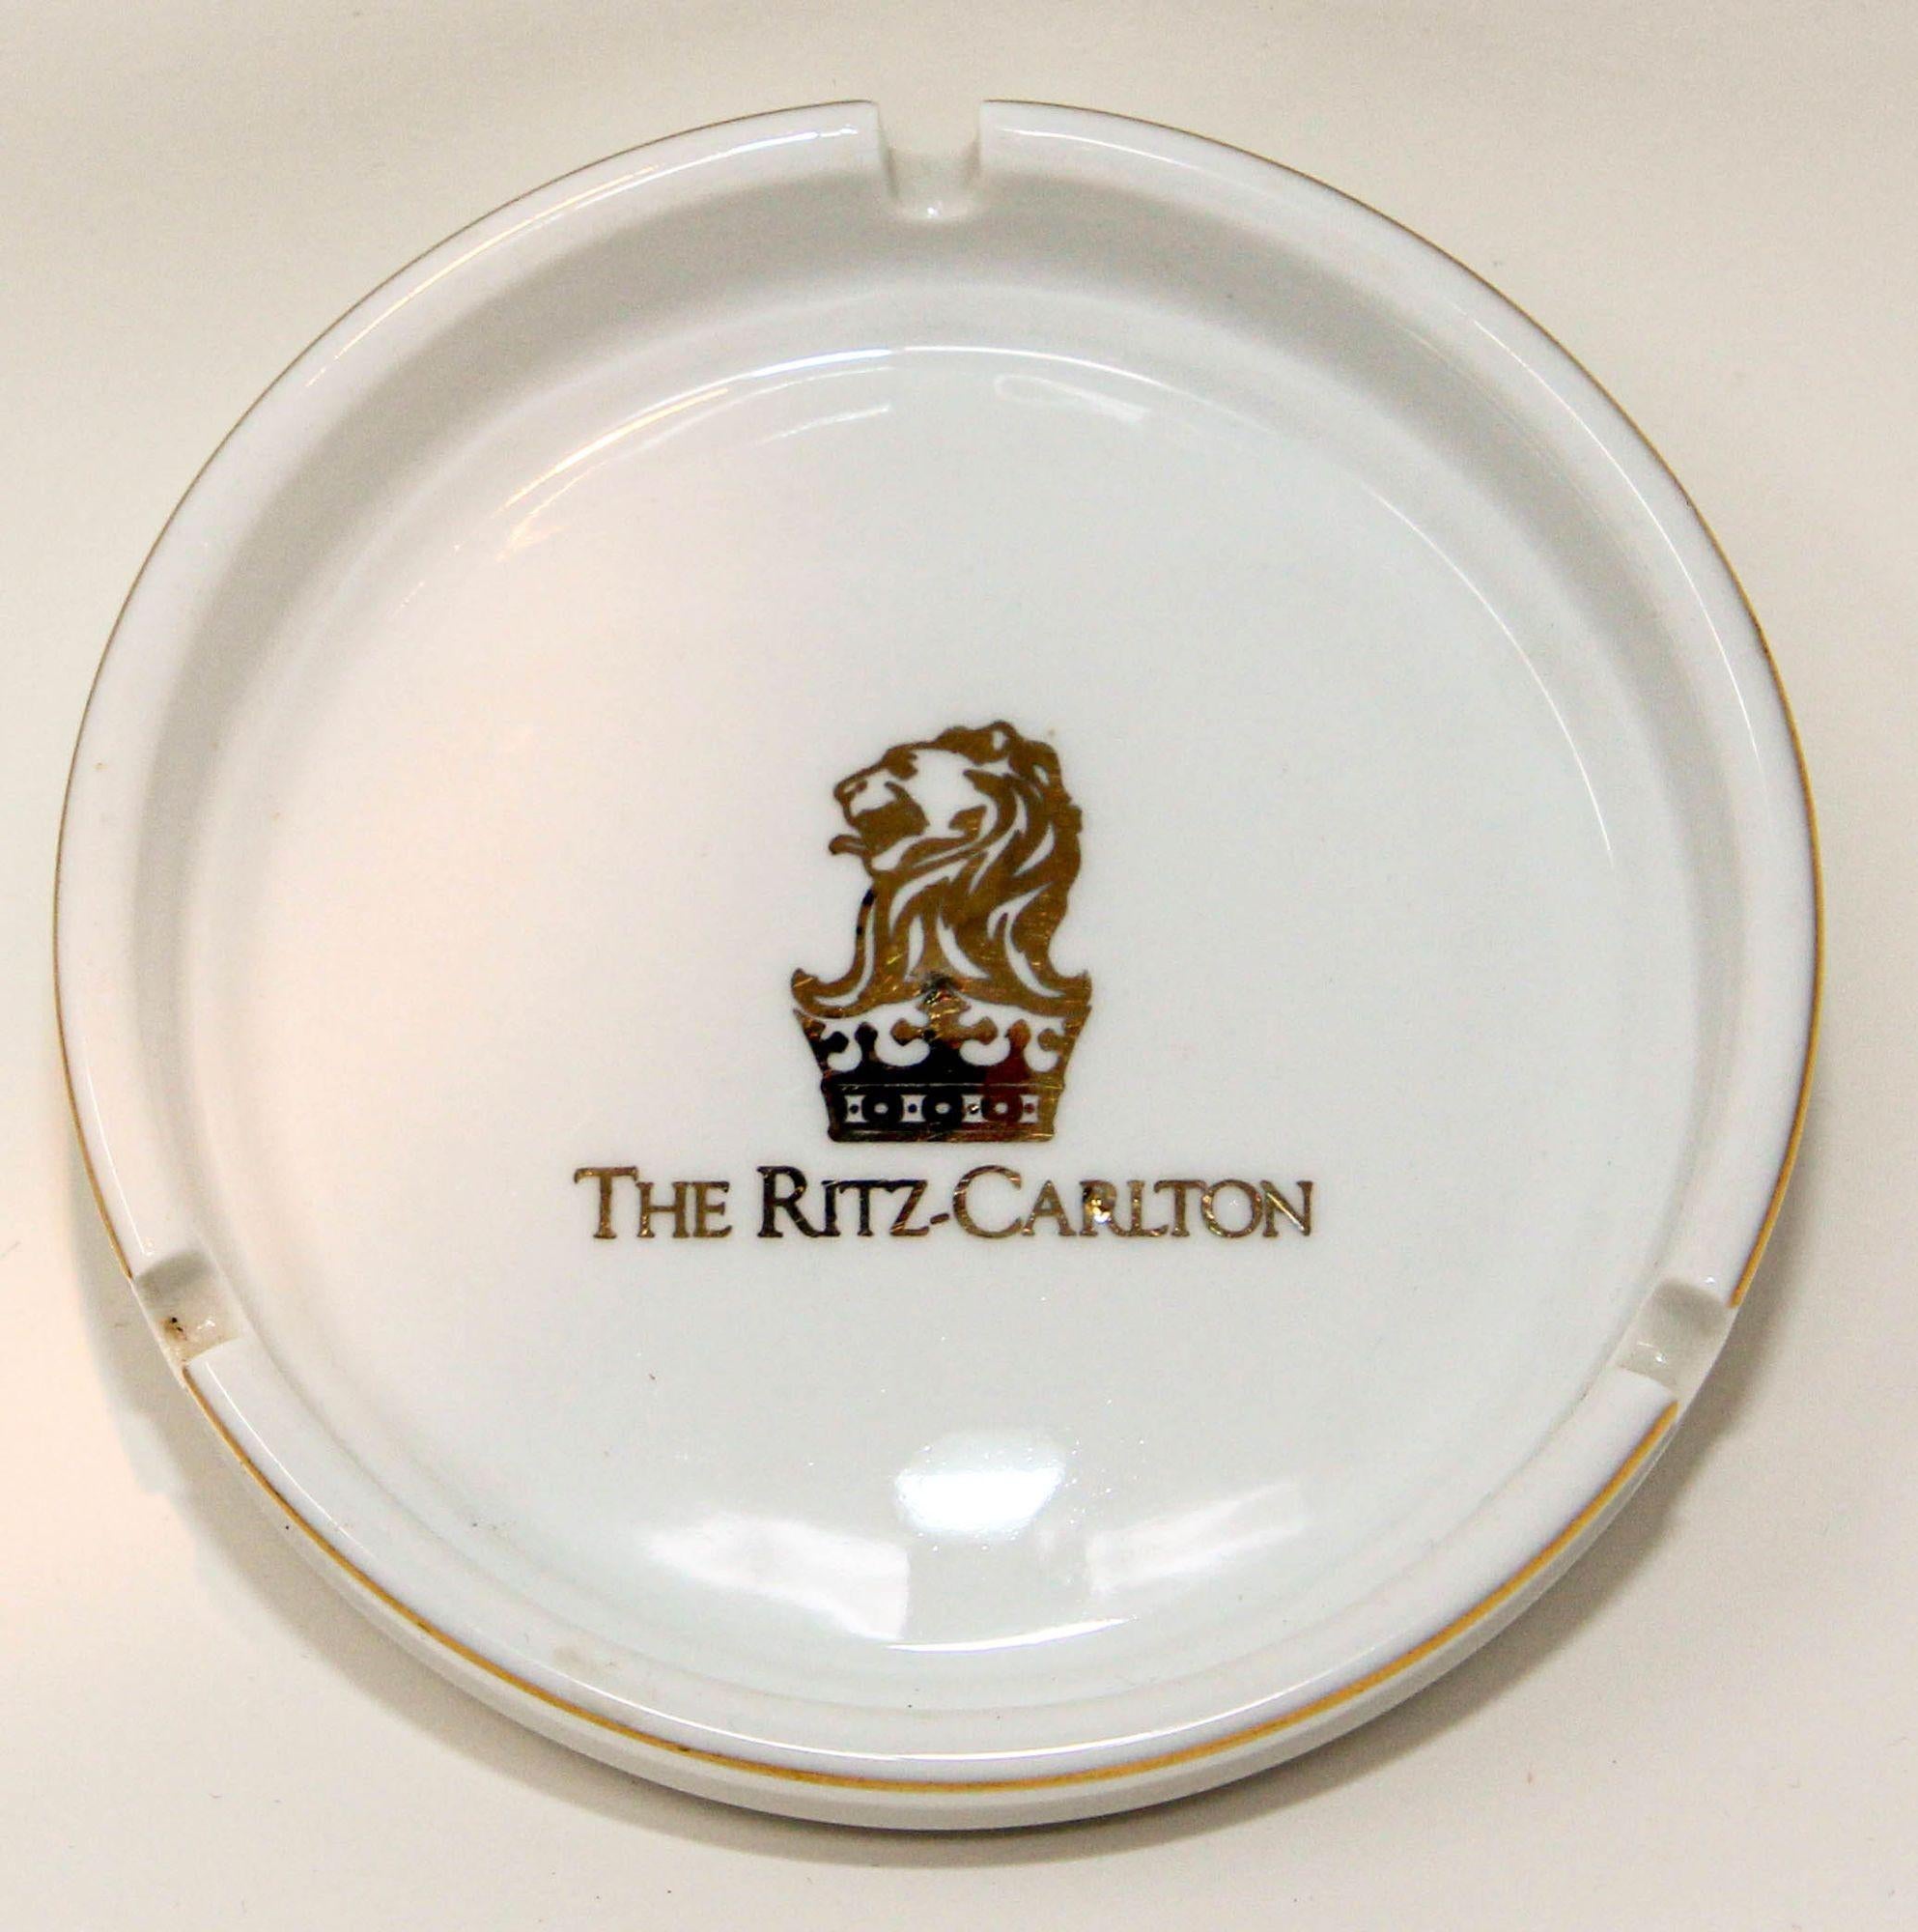 Collectible Vintage The Ritz Carlton weiß und gold Aschenbecher, catchall oder Schmuck Dish.
Vintage Aschenbecher aus weißem und goldenem Porzellan aus dem berühmten Hotel 